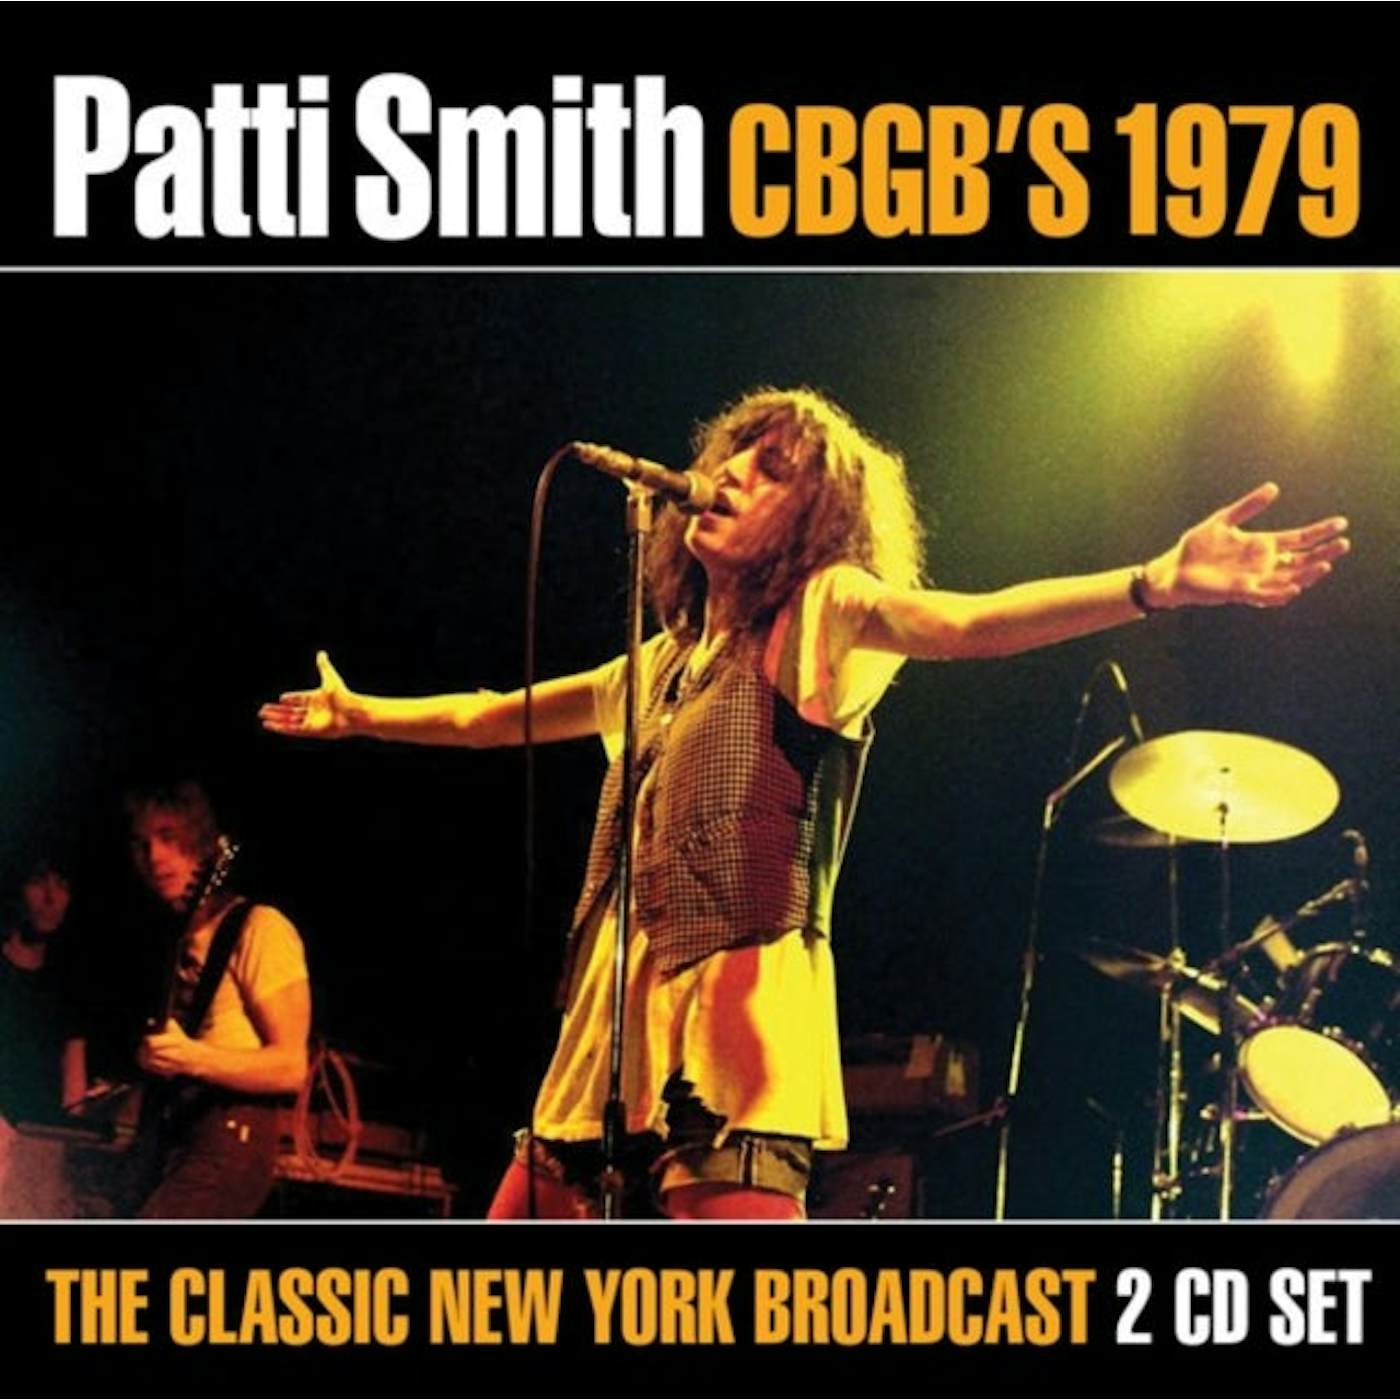 Patti Smith CD - Cbgb's 1979 (2cd)